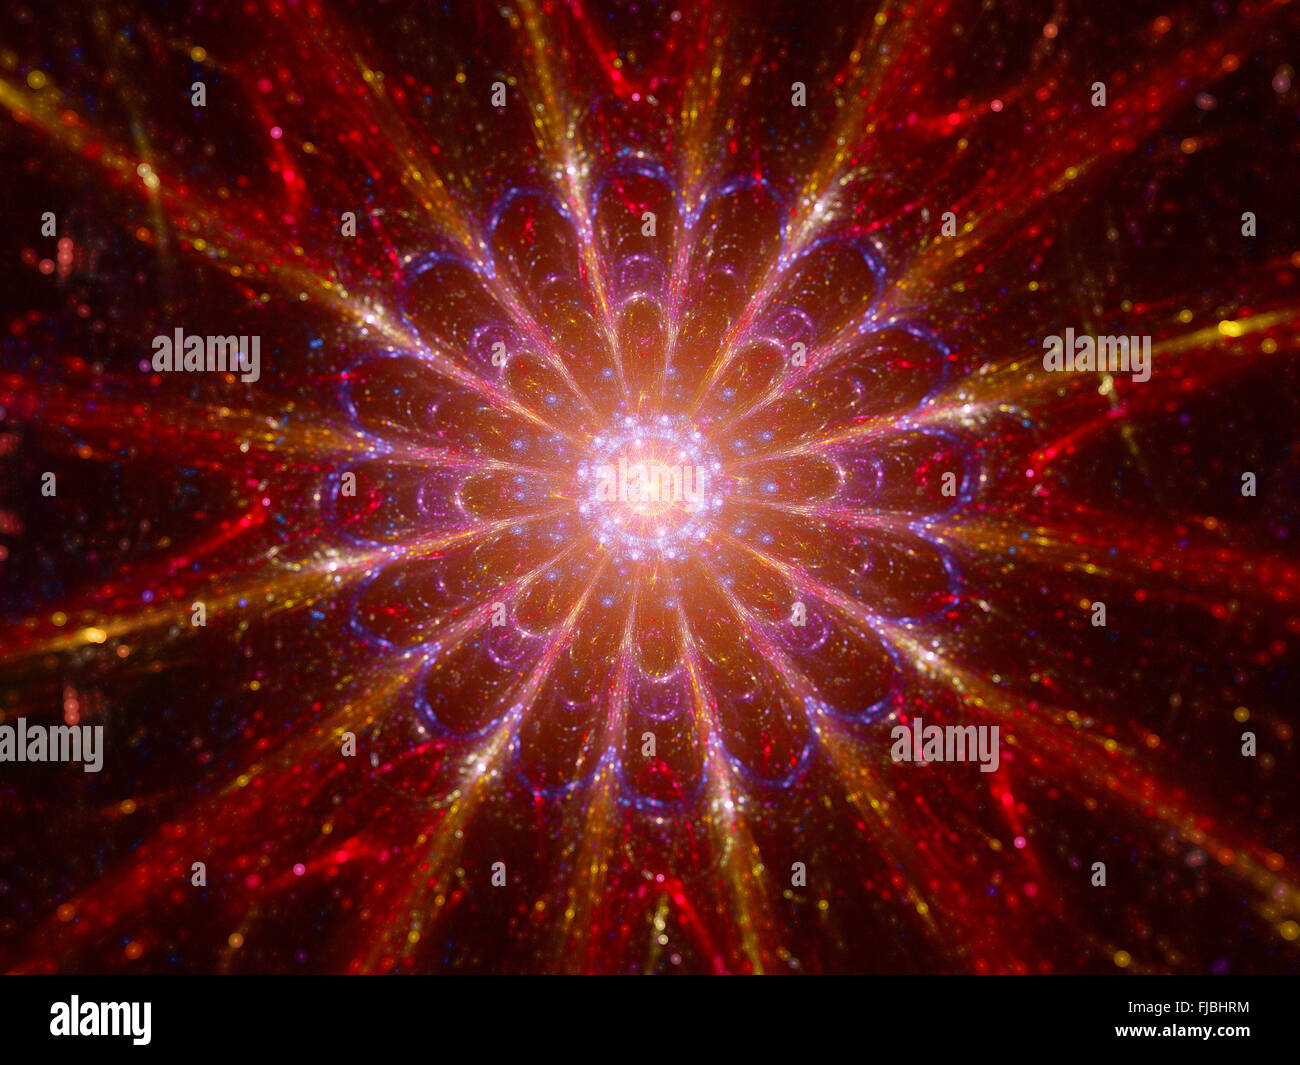 Arriba 72+ imagen modelo de la teoria del big bang - Thcshoanghoatham ...